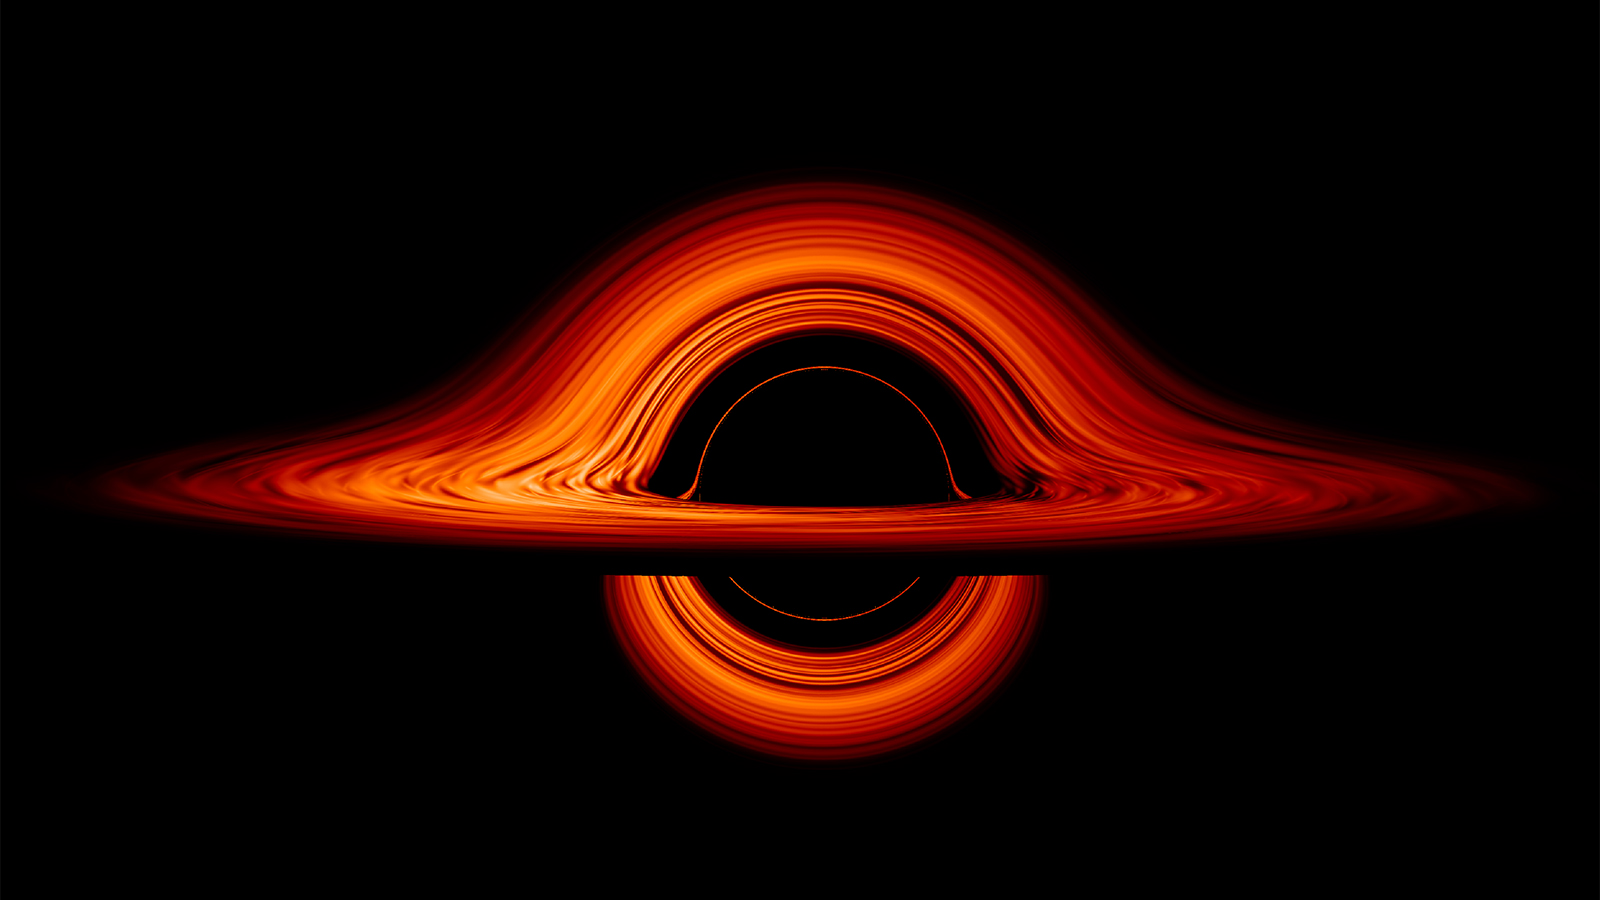 Das ist kein Foto eines Schwarzen Lochs, sondern eine künstlerische Darstellung. Wie es im Inneren eines Schwarzen Lochs aussieht, weiß man nicht. Ein junges Mädchen hat sich darüber Gedanken gemacht. Bild: NASA/J. Schnittman  